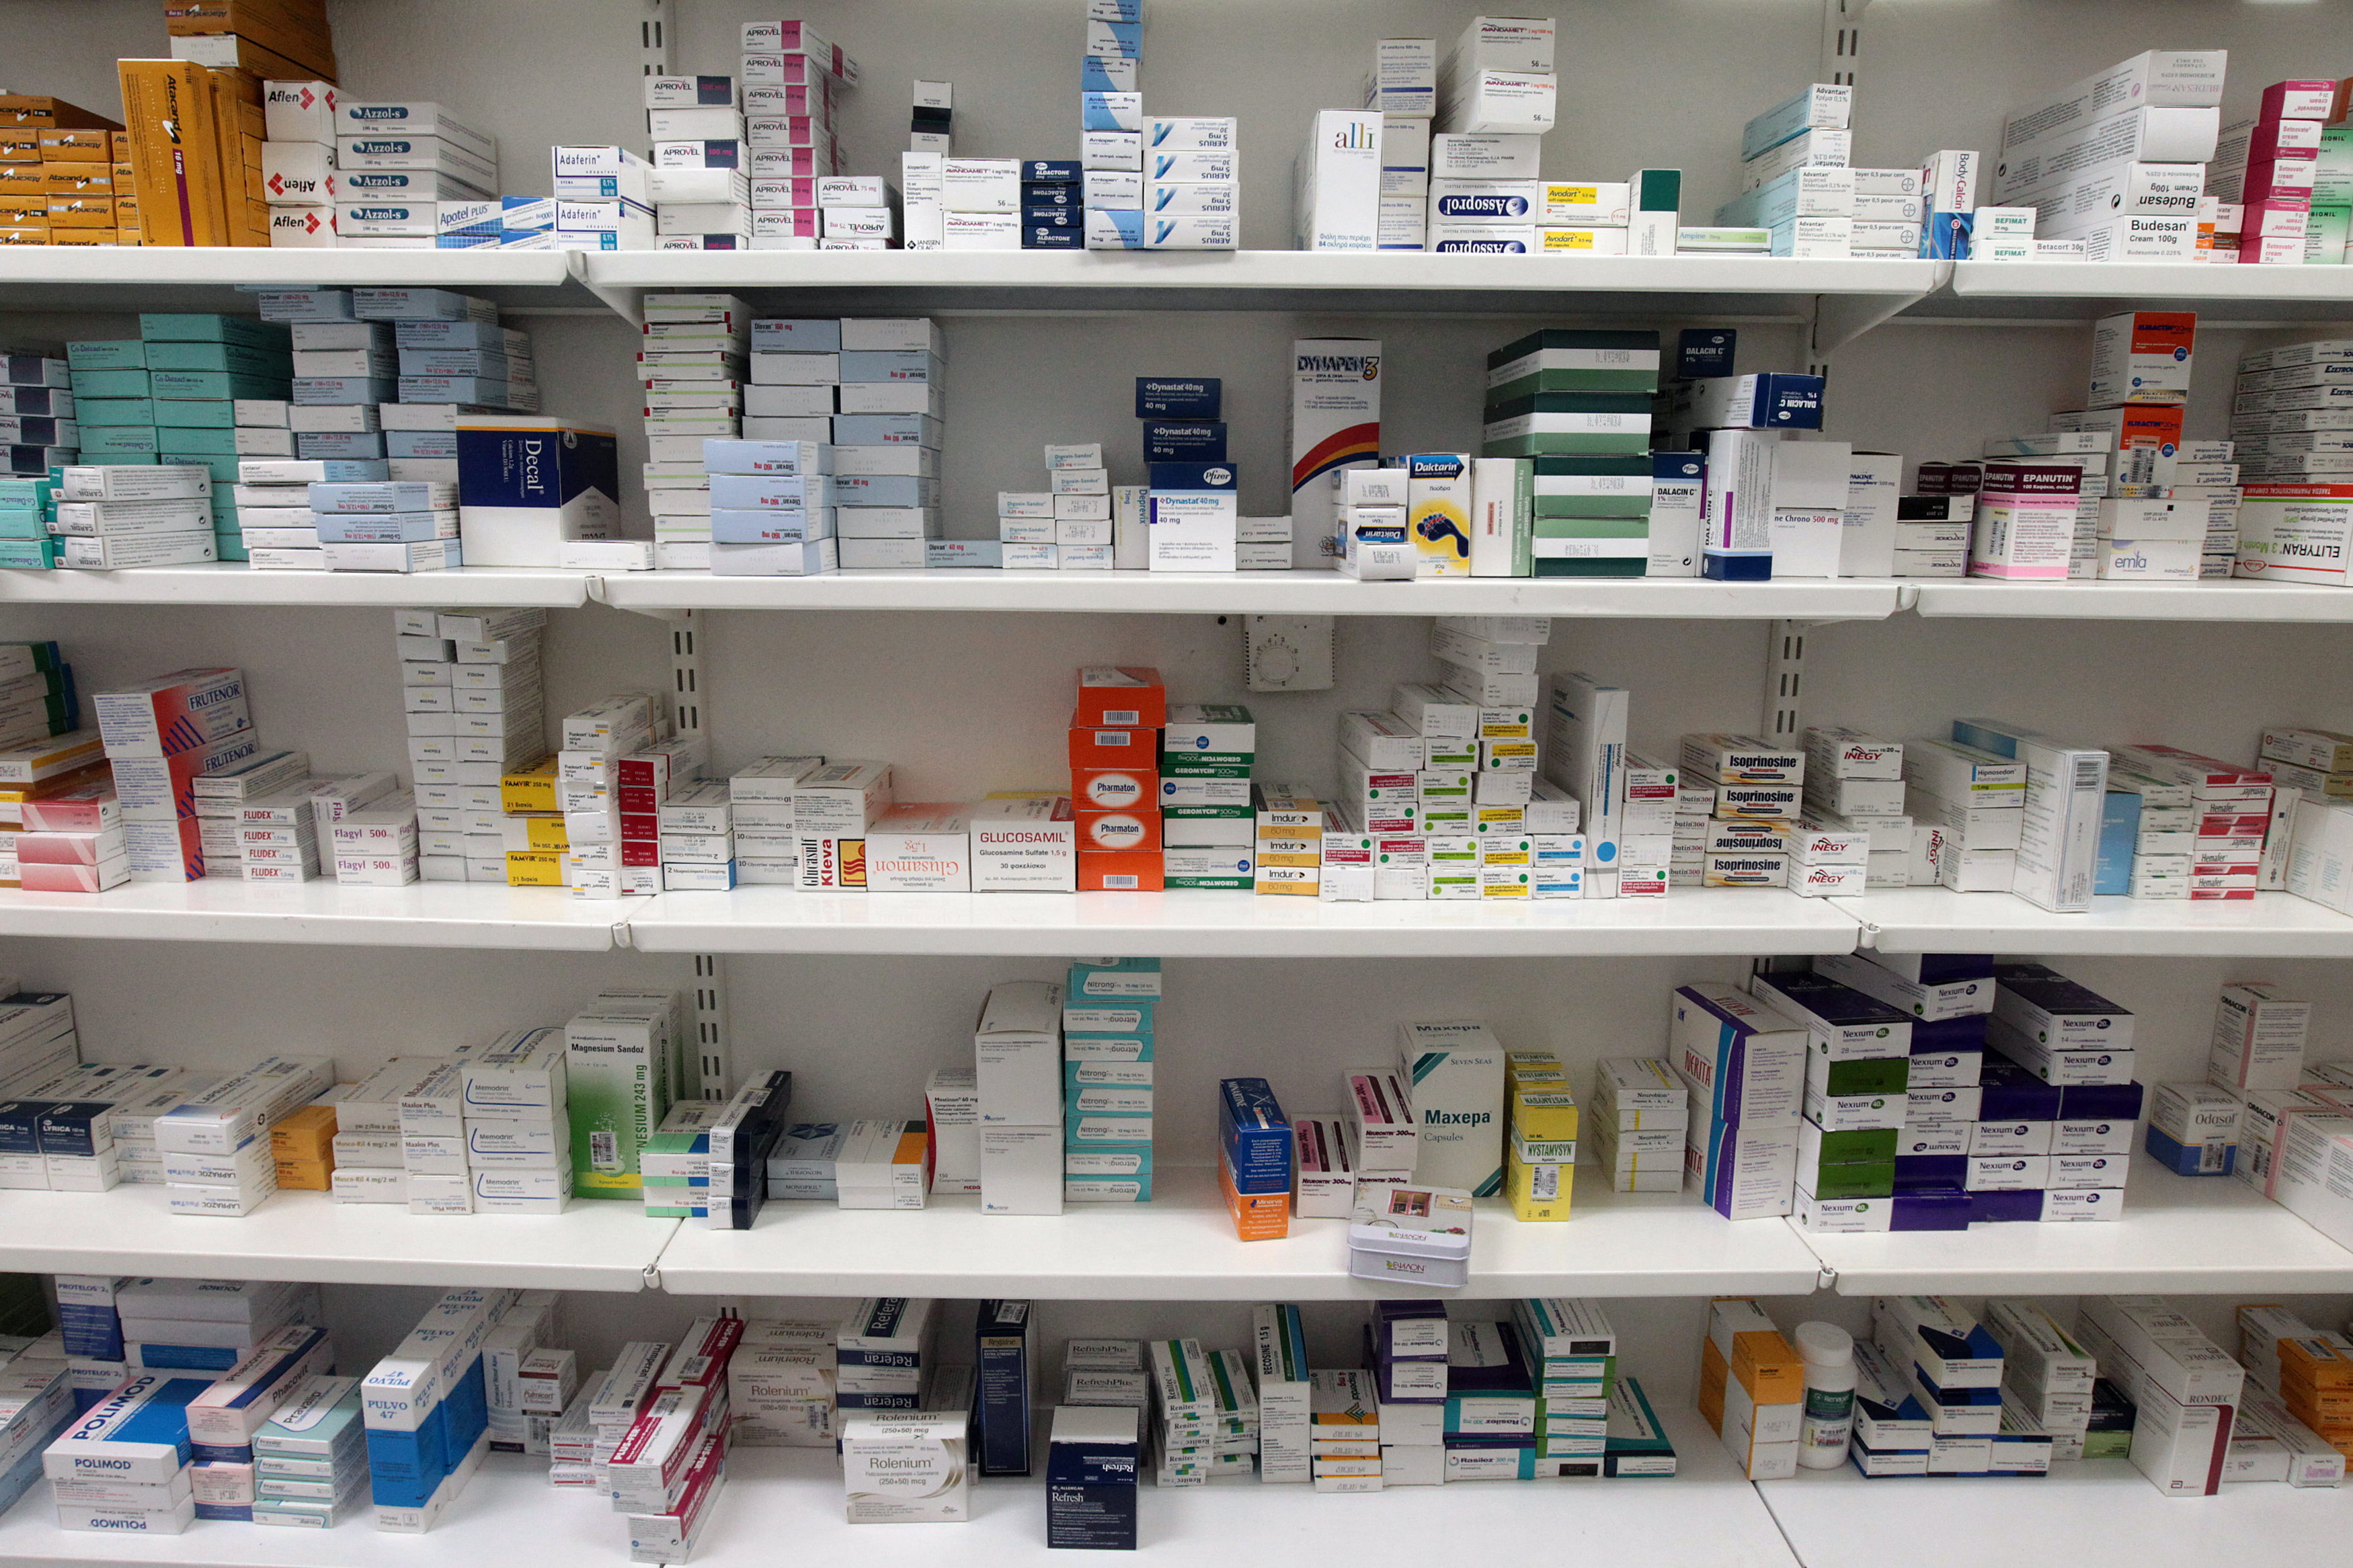 Γερμανία: Κλειστά τα φαρμακεία στις 14/6 - Οι φαρμακοποιοί διαμαρτύρονται για τις ελλείψεις φαρμάκων & τη "μανία λιτότητας" των ασφαλιστικών ταμείων